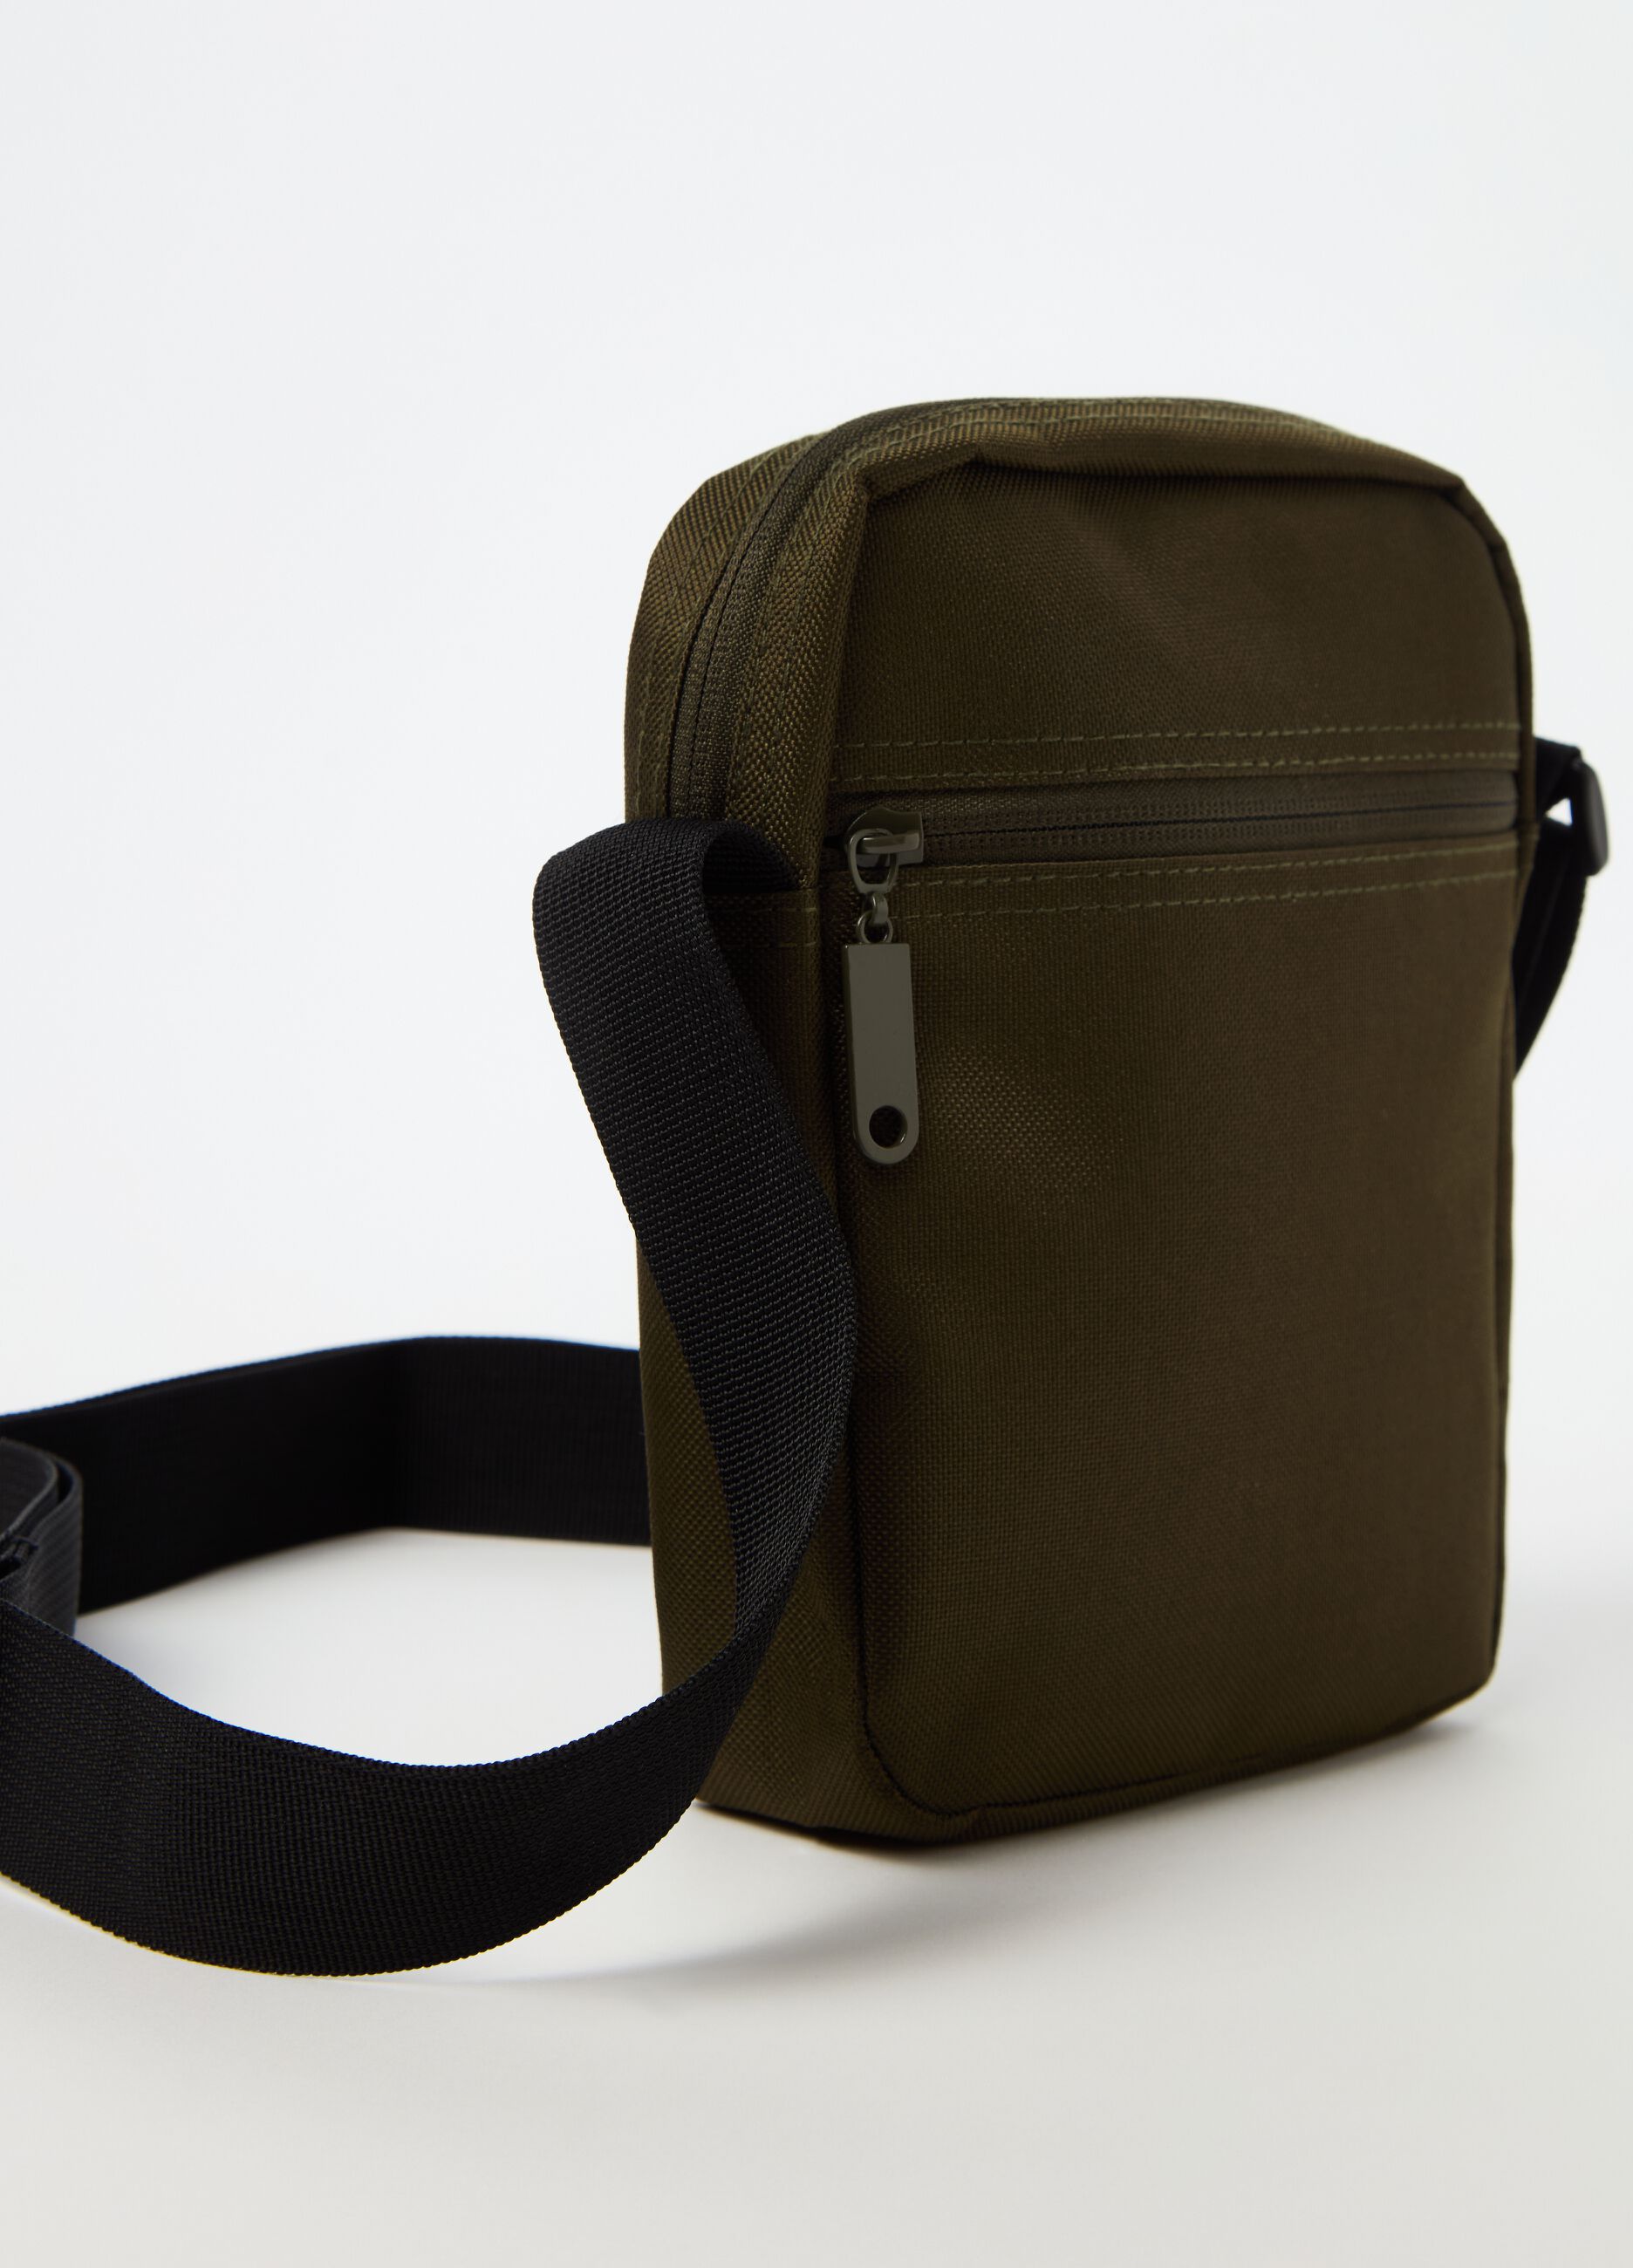 Bag with shoulder strap